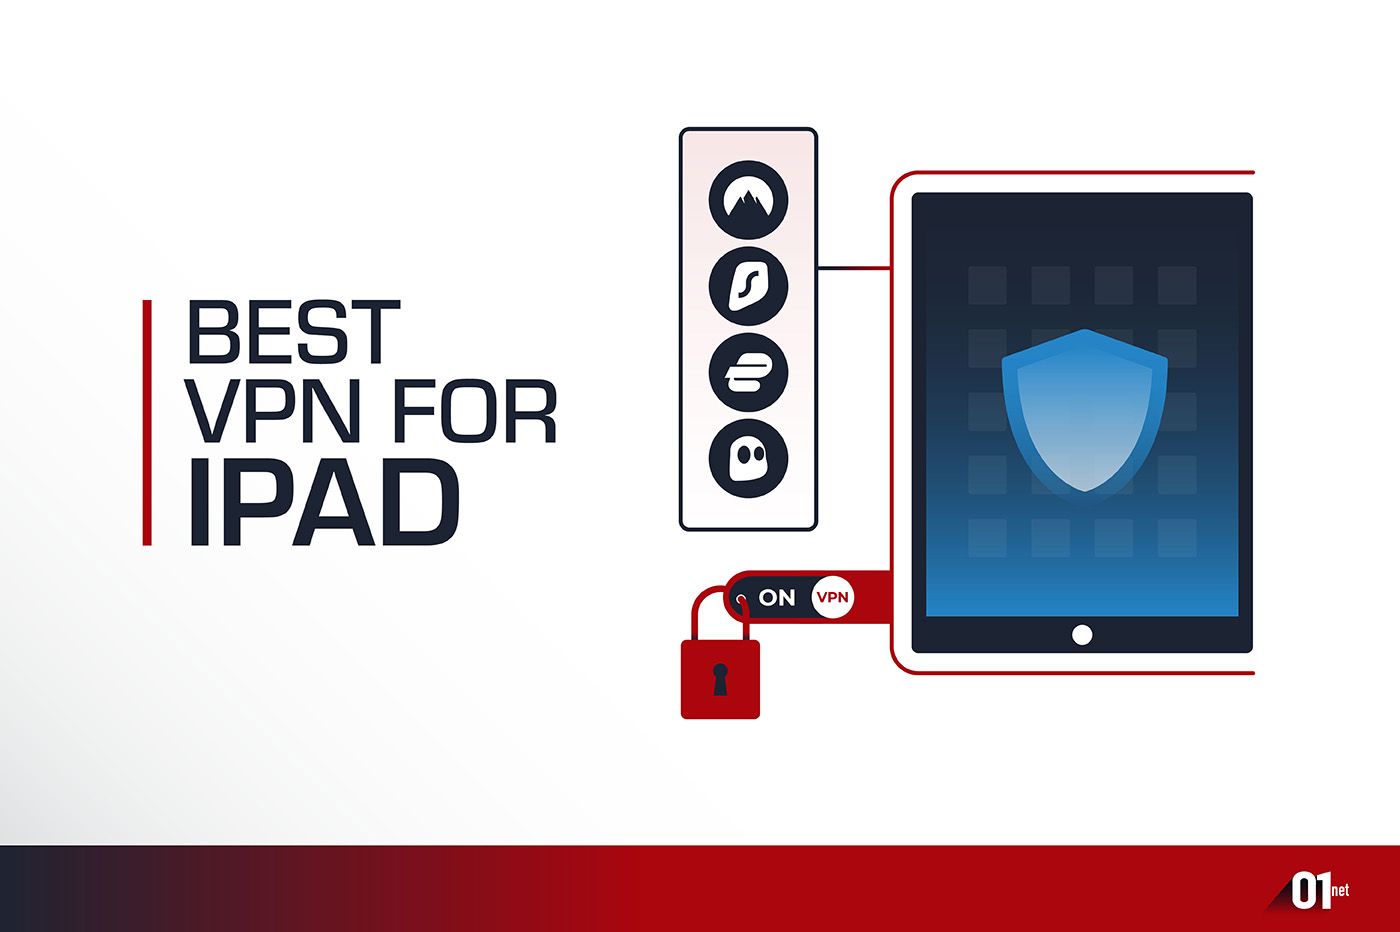 Best VPN iPad